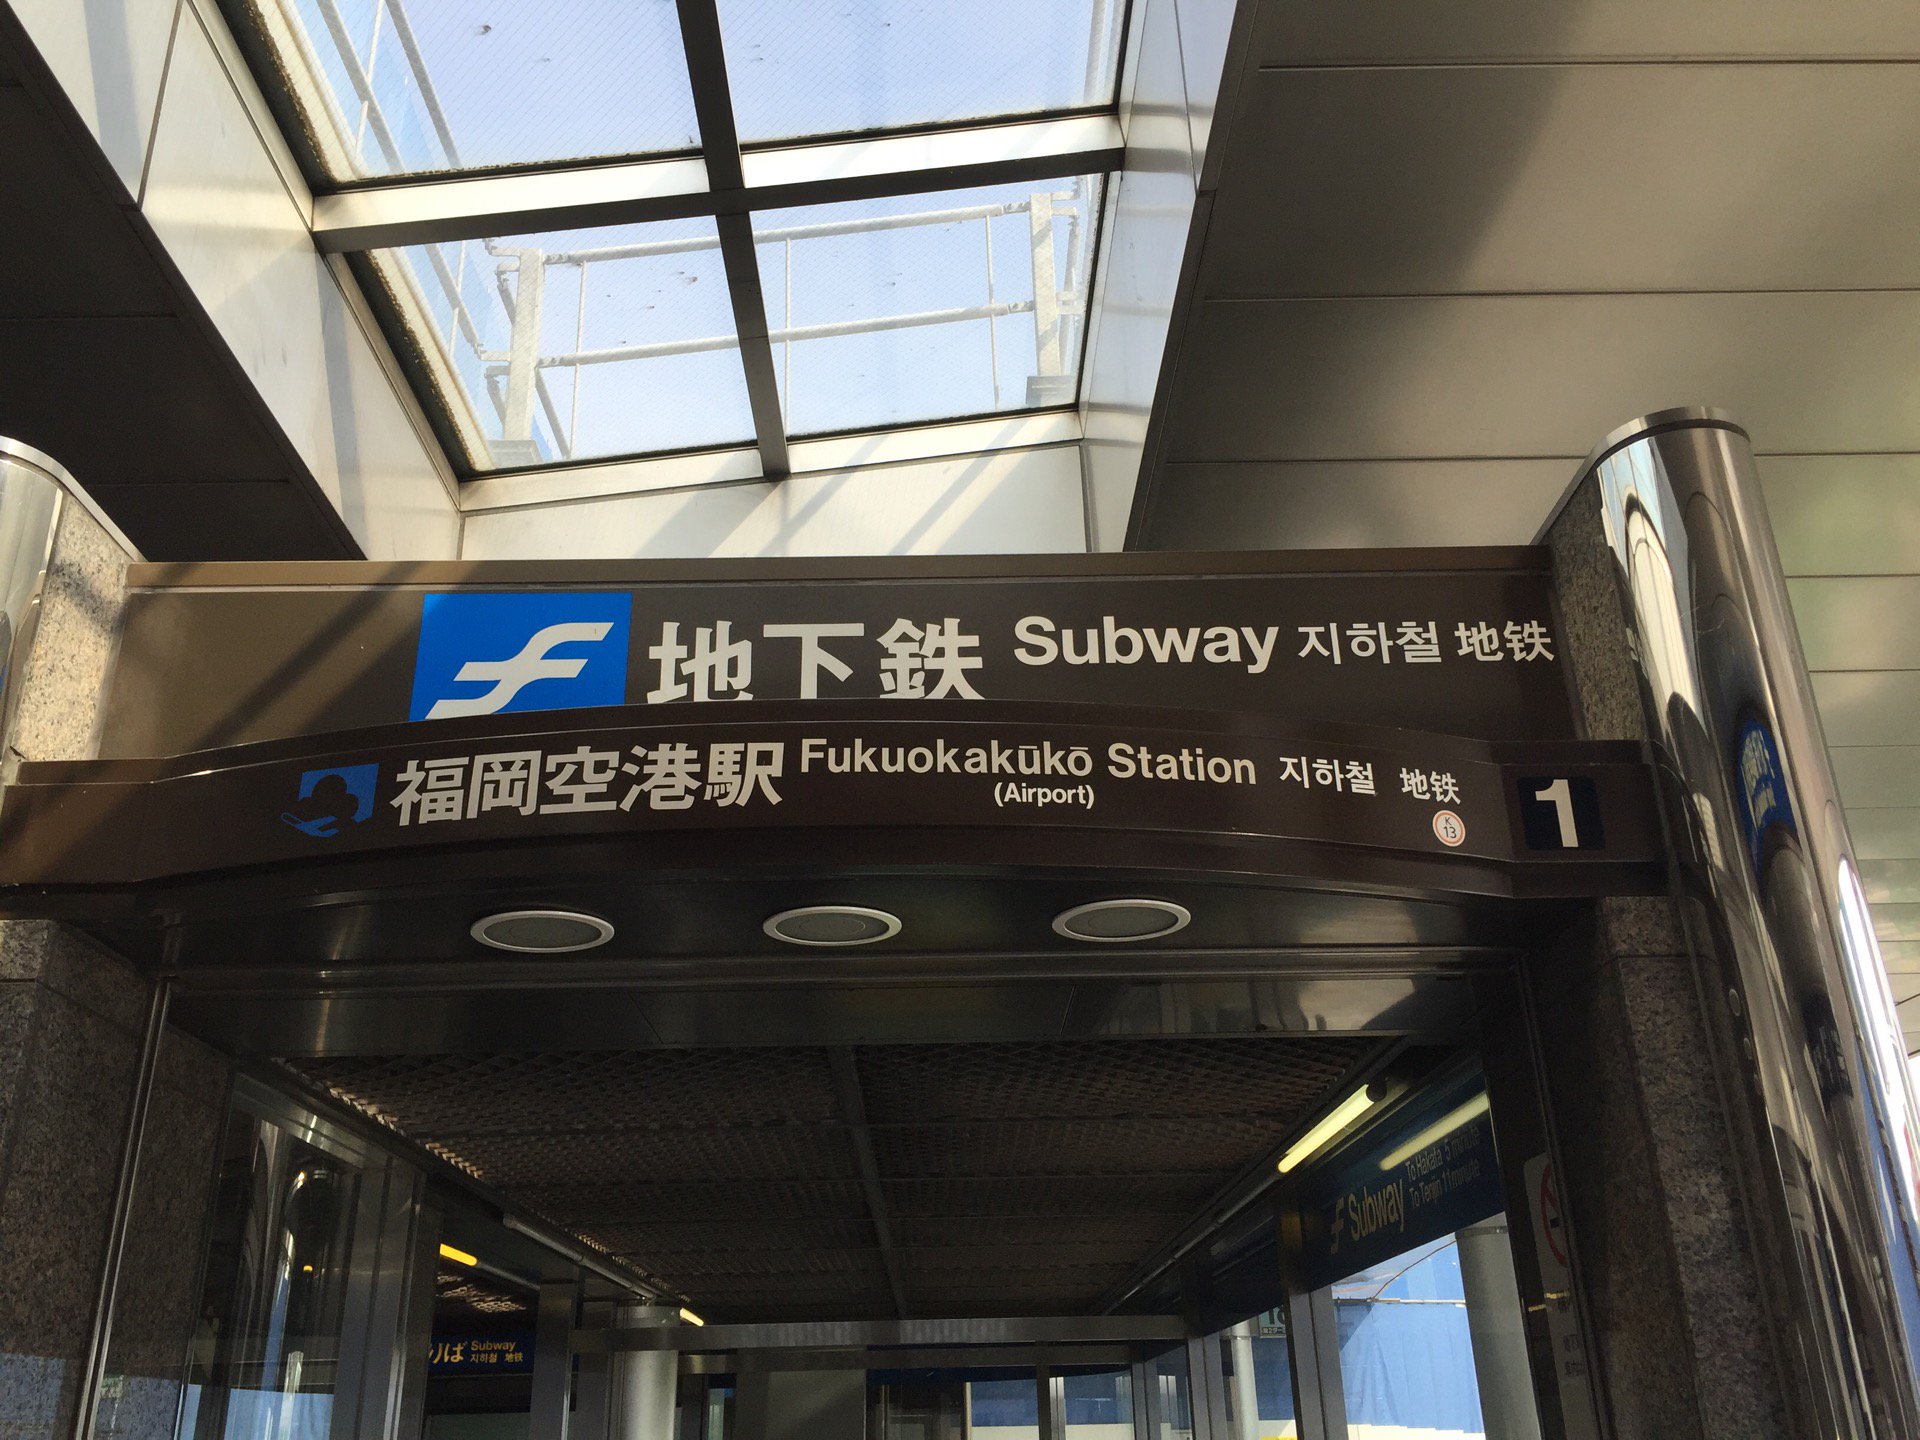 地下鉄。 (@ 福岡空港駅 in Fukuoka, 福岡県)  